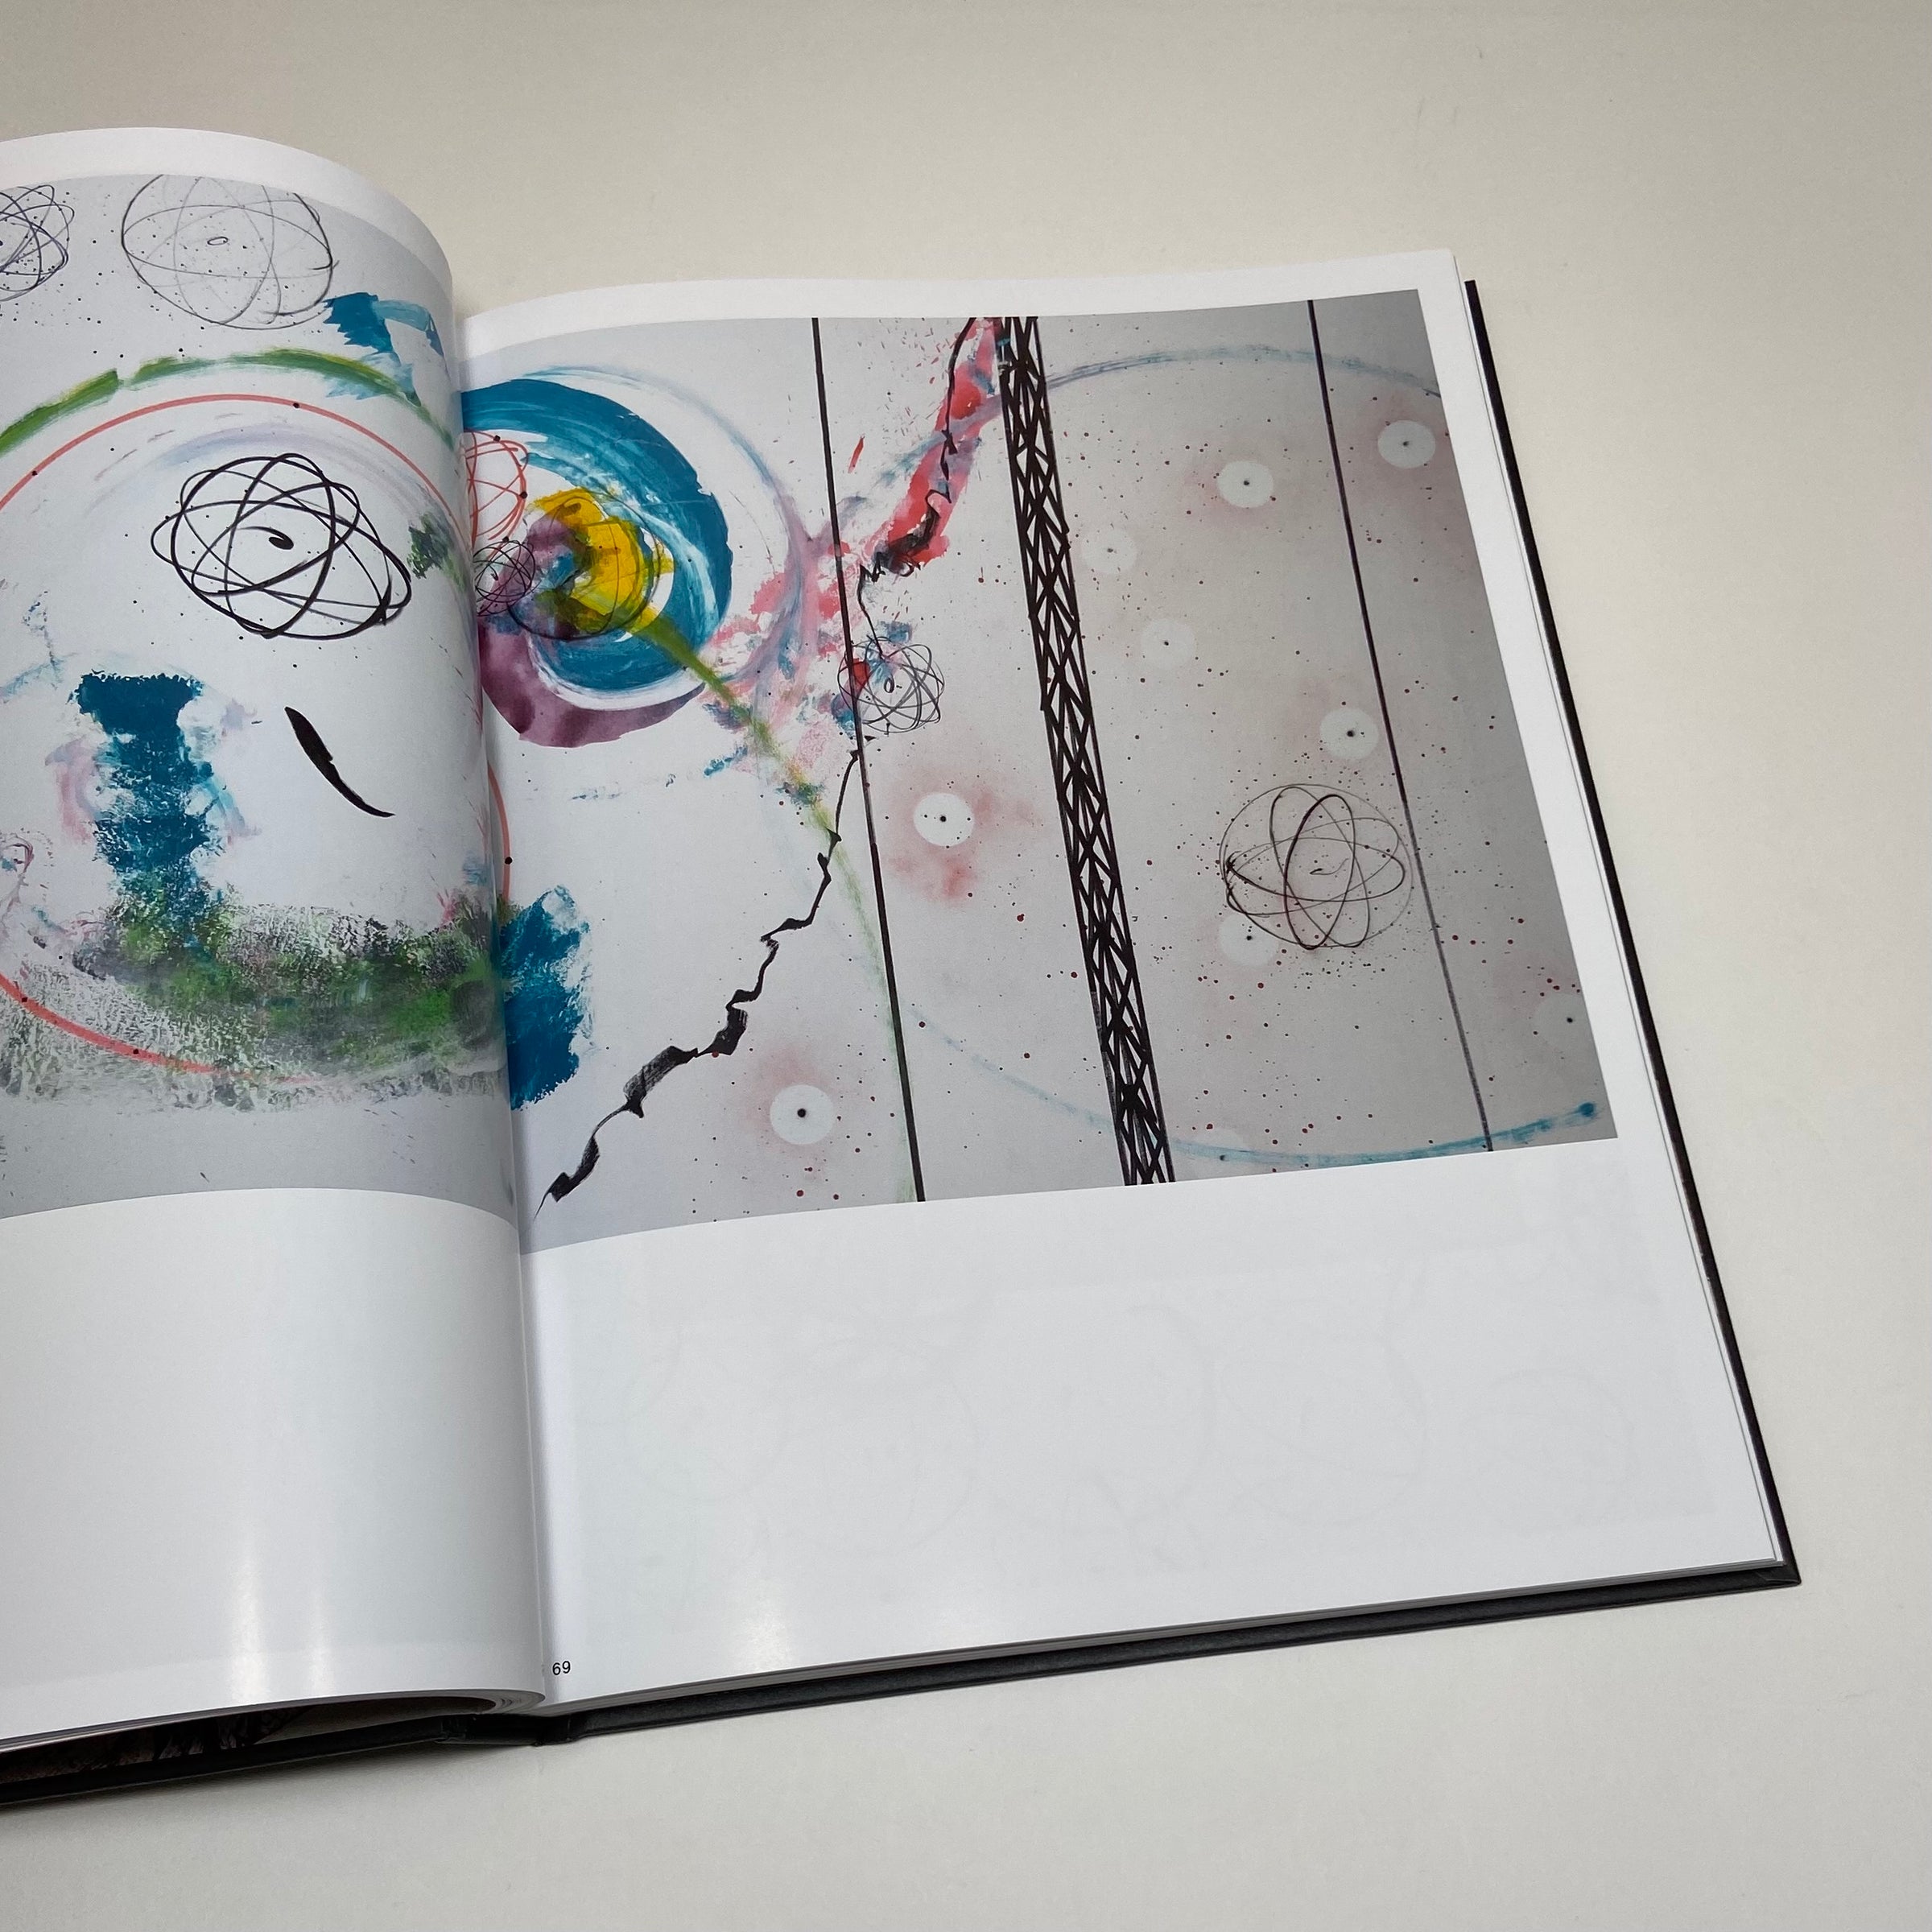 Rizzoli - Futura Deluxe Edition: The Artist's Monograph with